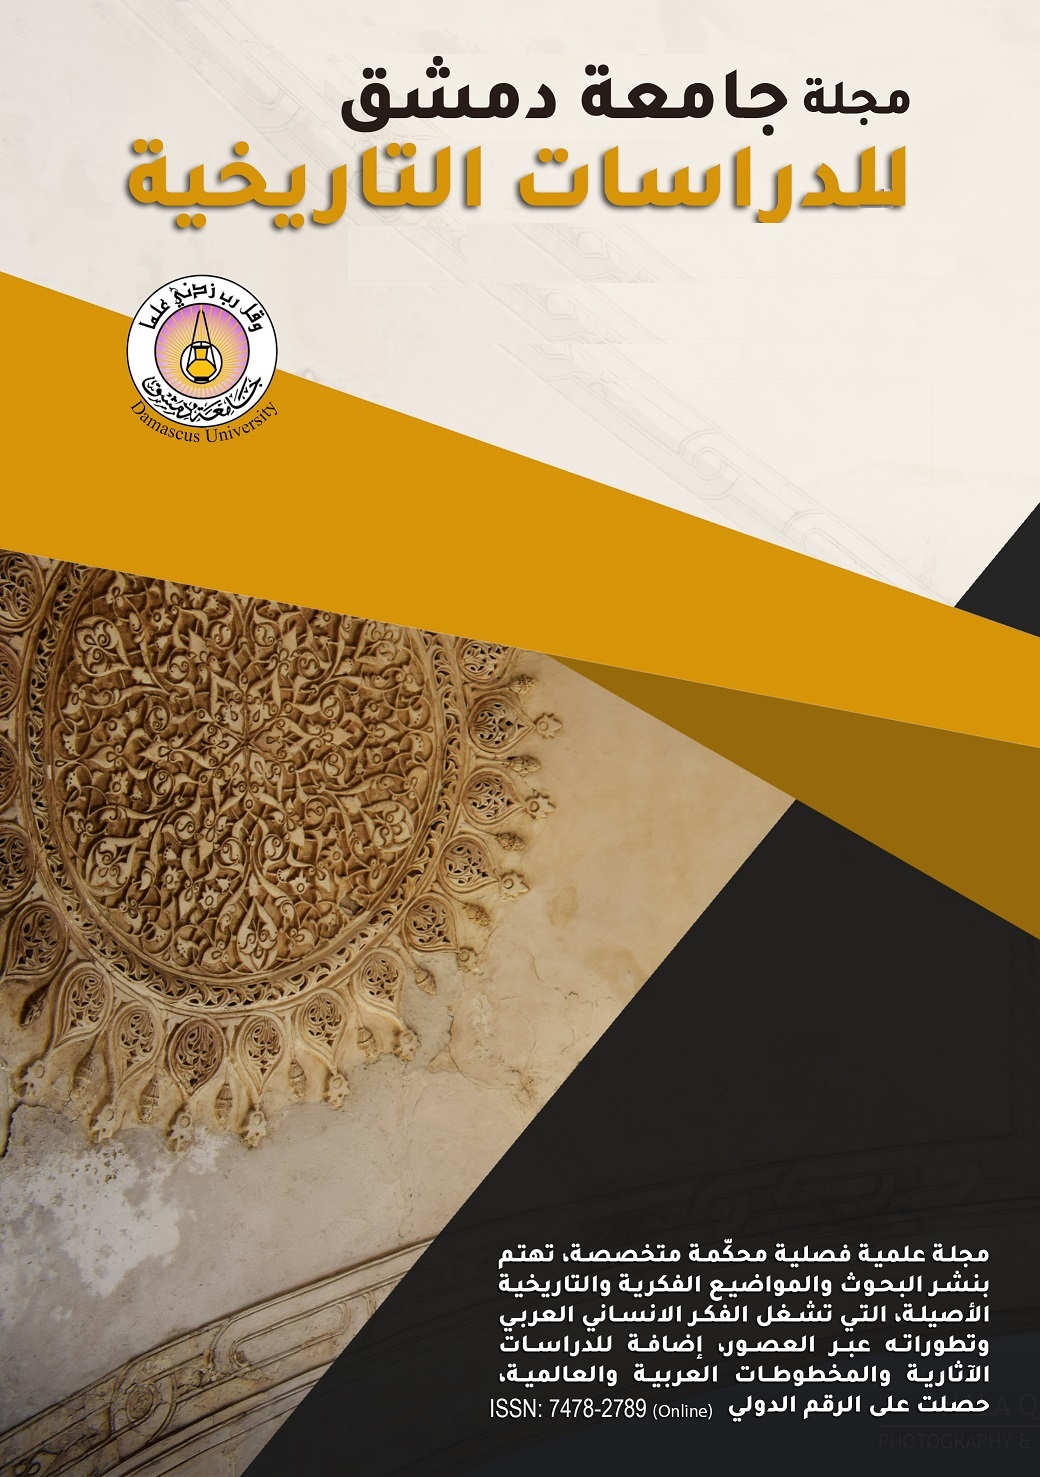 					معاينة مجلد 138 عدد 1 (2018): مجلة جامعة دمشق للدراسات التاريخية
				